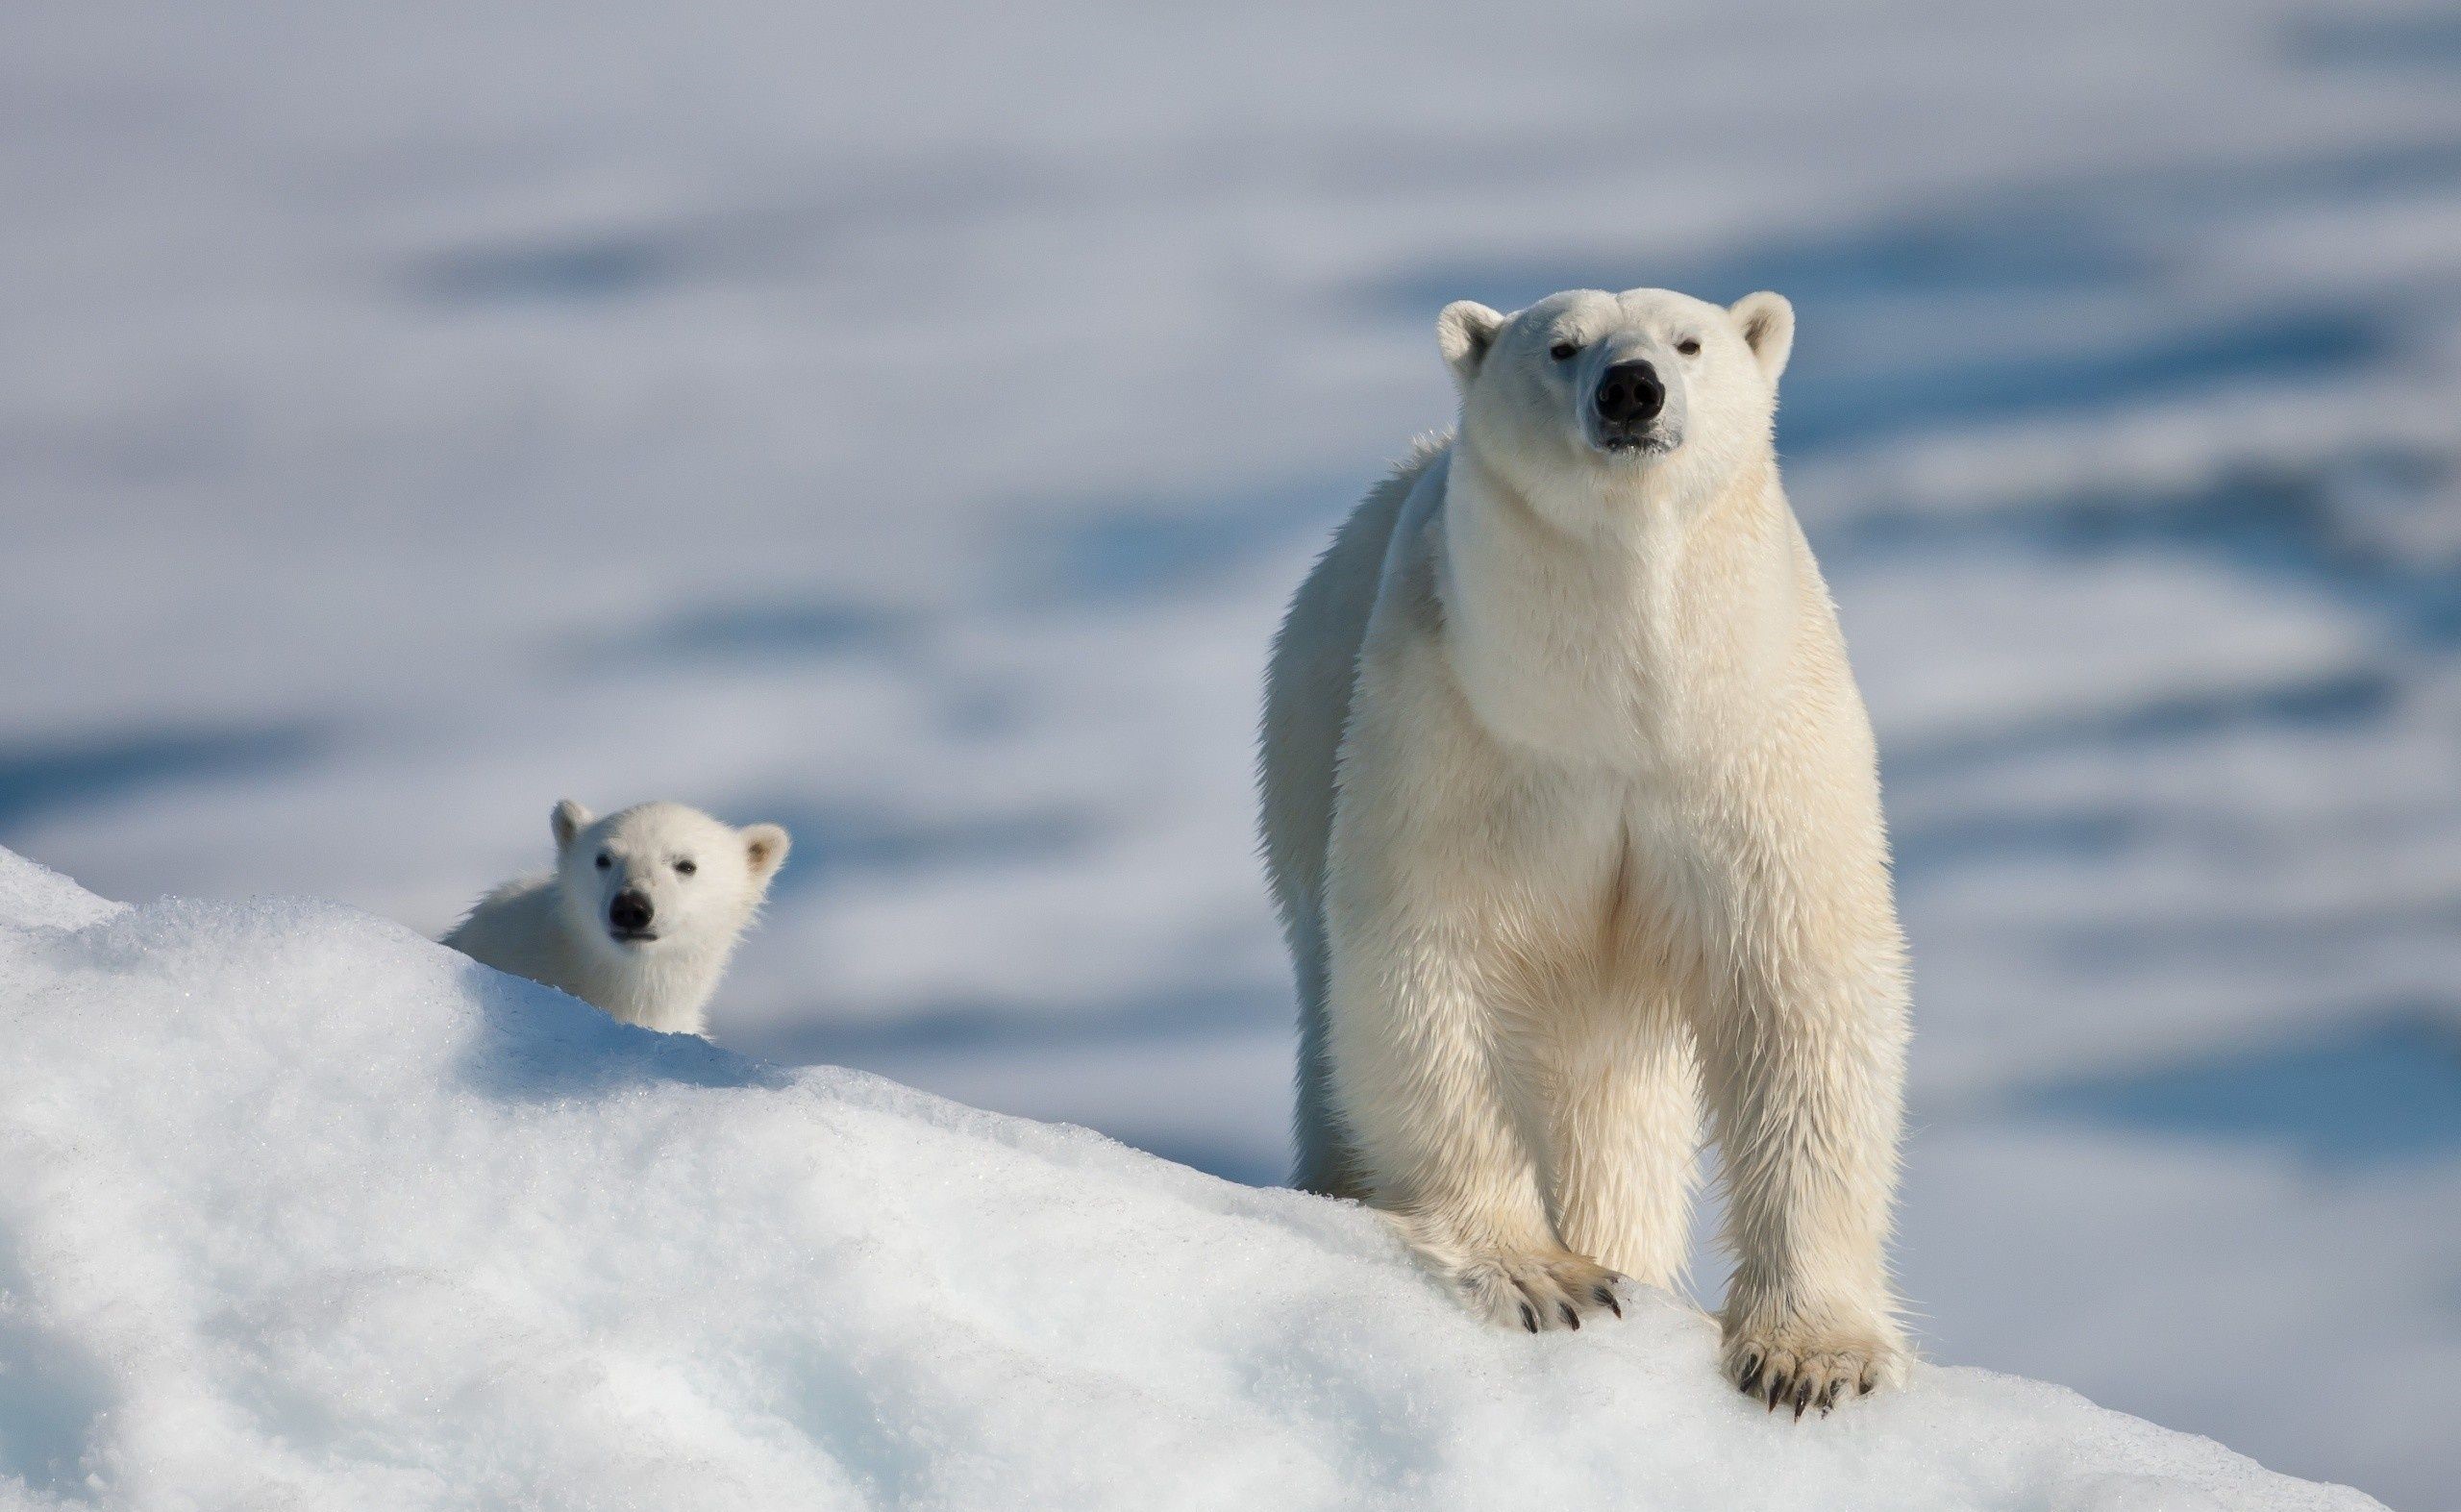 نمای درخشان و جالب از دو خرس قطبی در برف با کیفیت ویژه HD